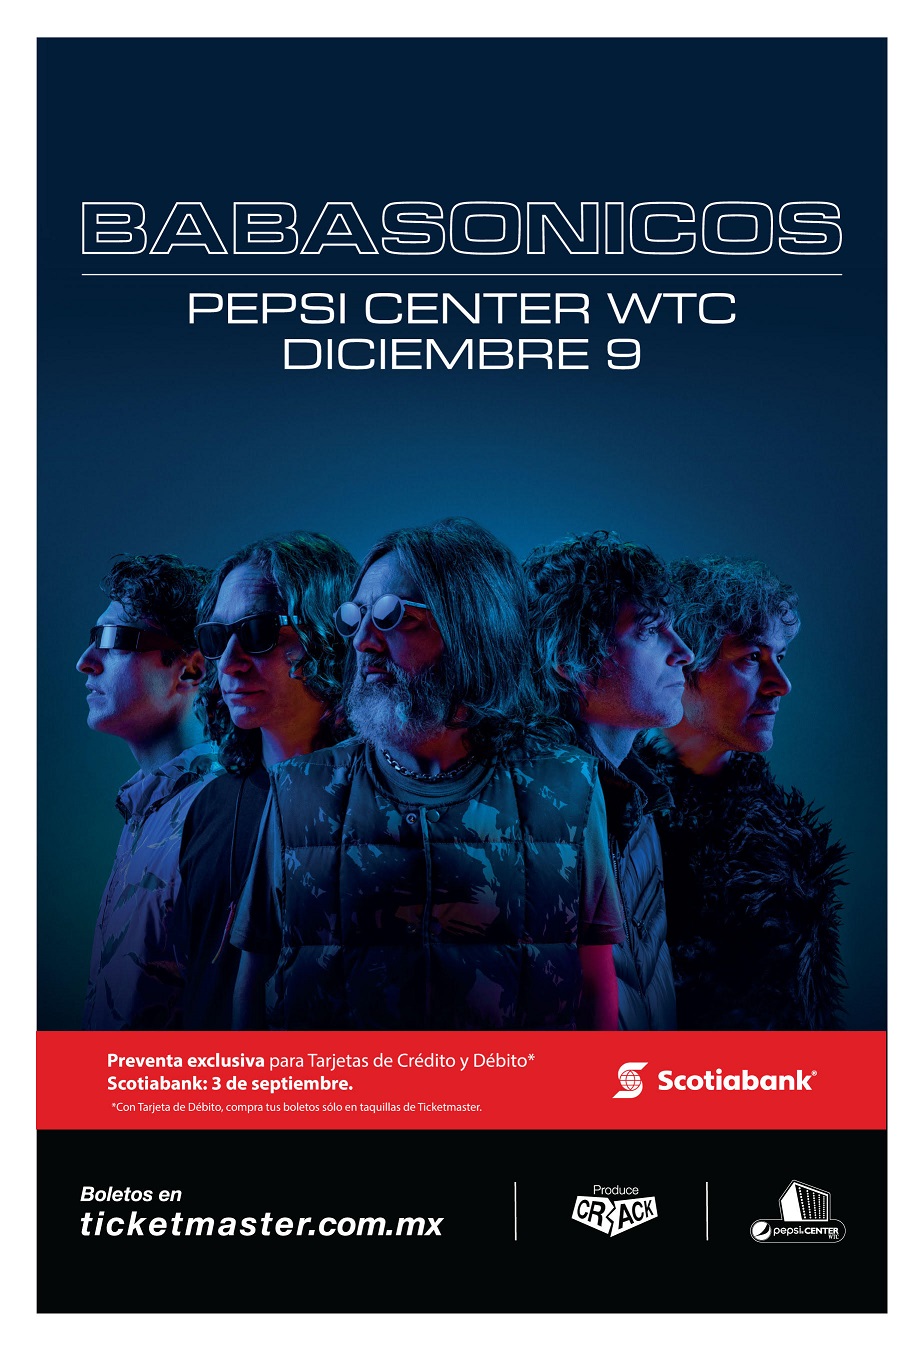 Babasónicos regresará a México para dar un concierto en el Pepsi Center